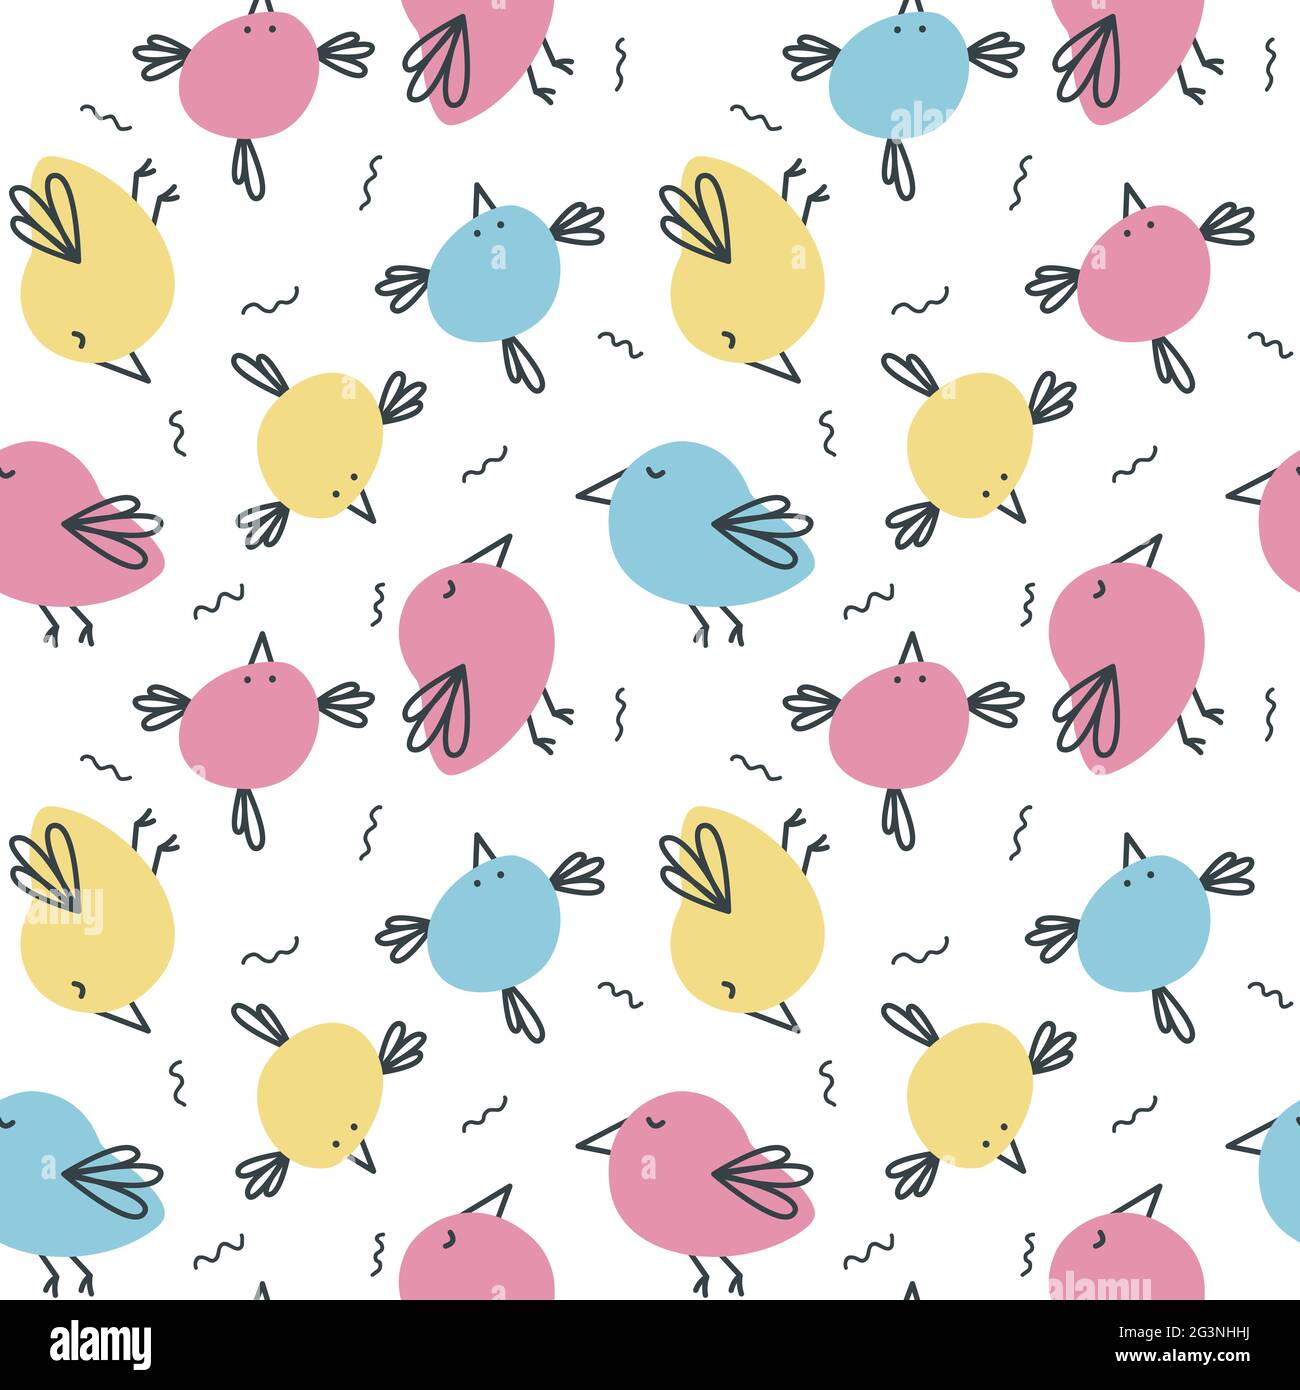 Coole nahtlose bunte Muster mit lustigen Doodle Vögel. Niedliches Textildesign für Kleidung, Bettwäsche, Bezüge, Kindertapete, Geschenkpapier. Stock Vektor